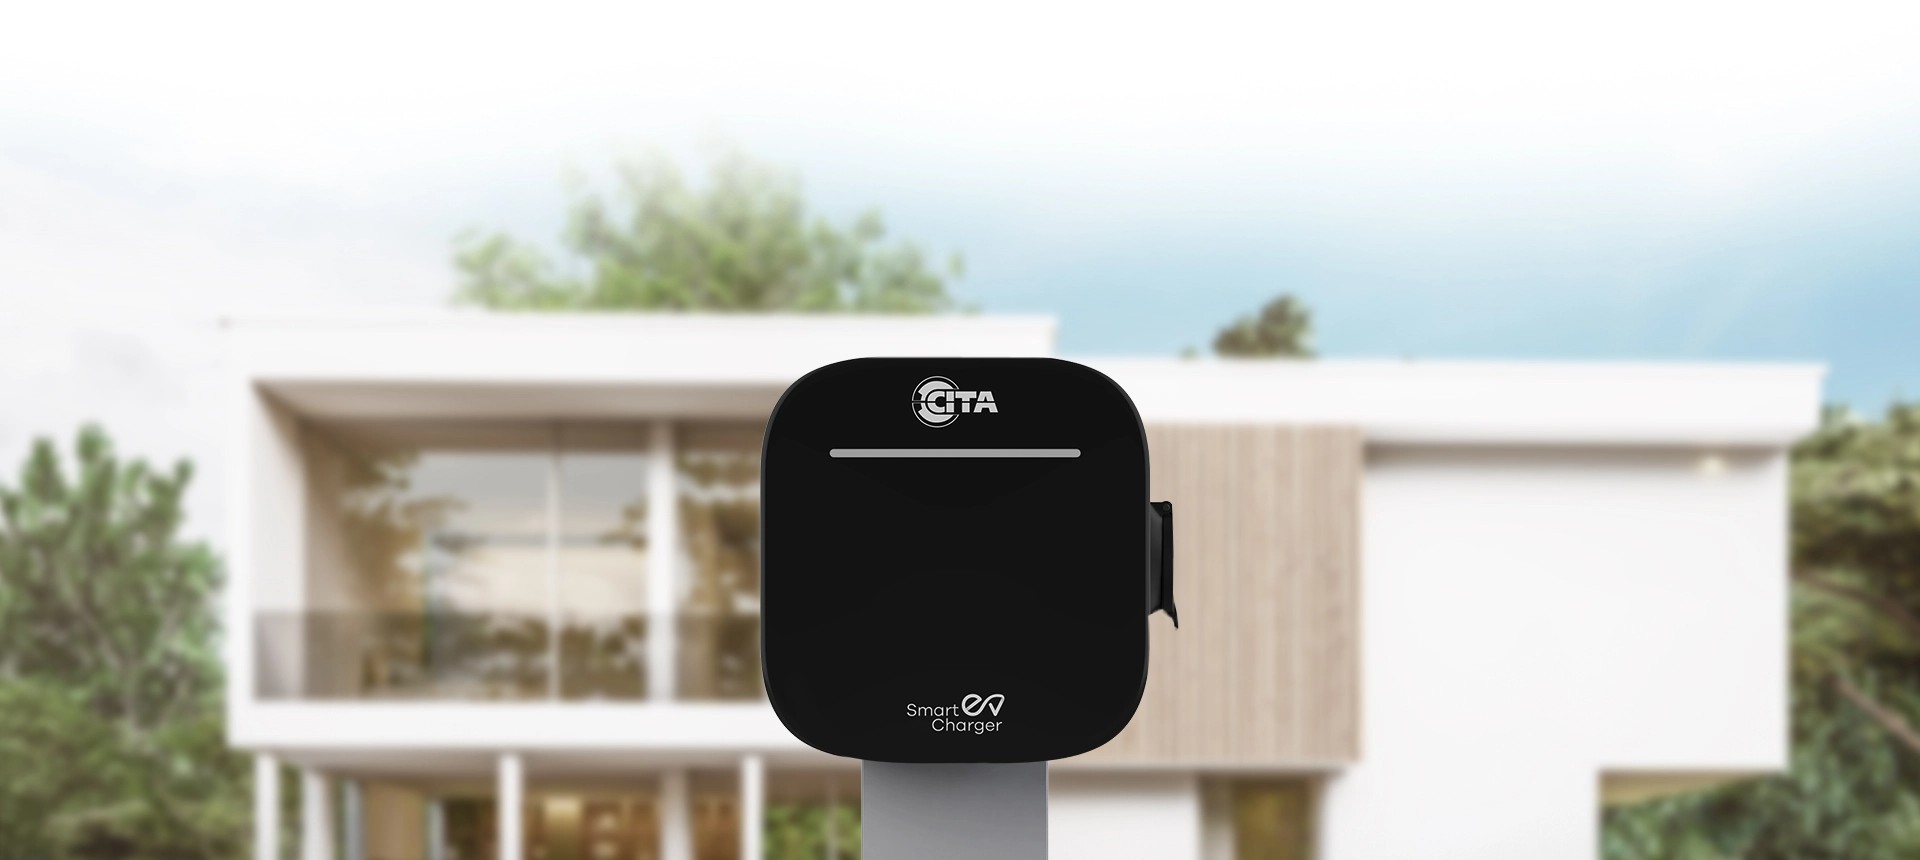 Home EV Charging Solutions - CITA Smart EV Charger